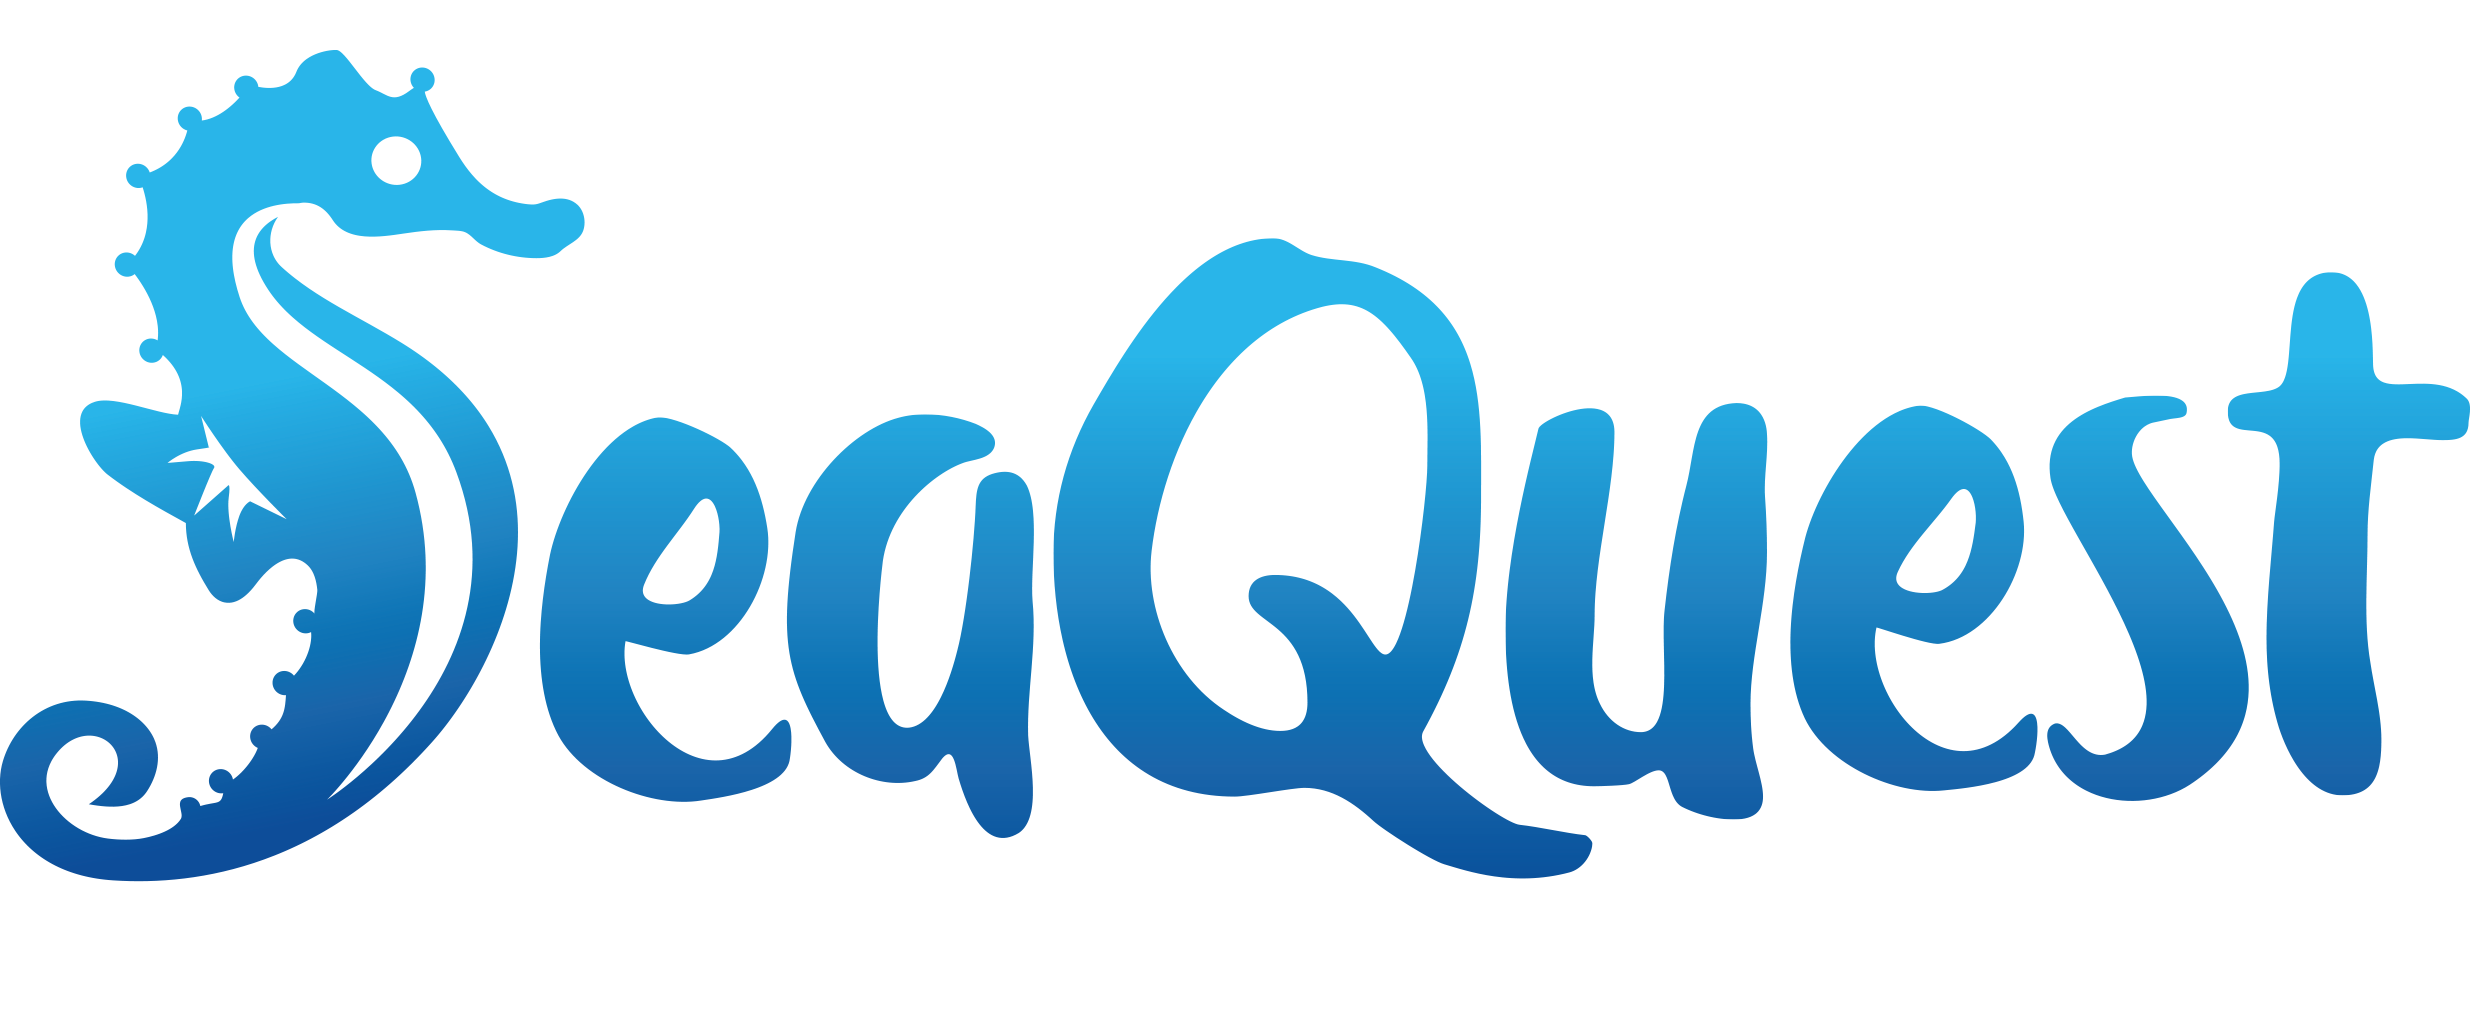 SeaQuest_logo.png